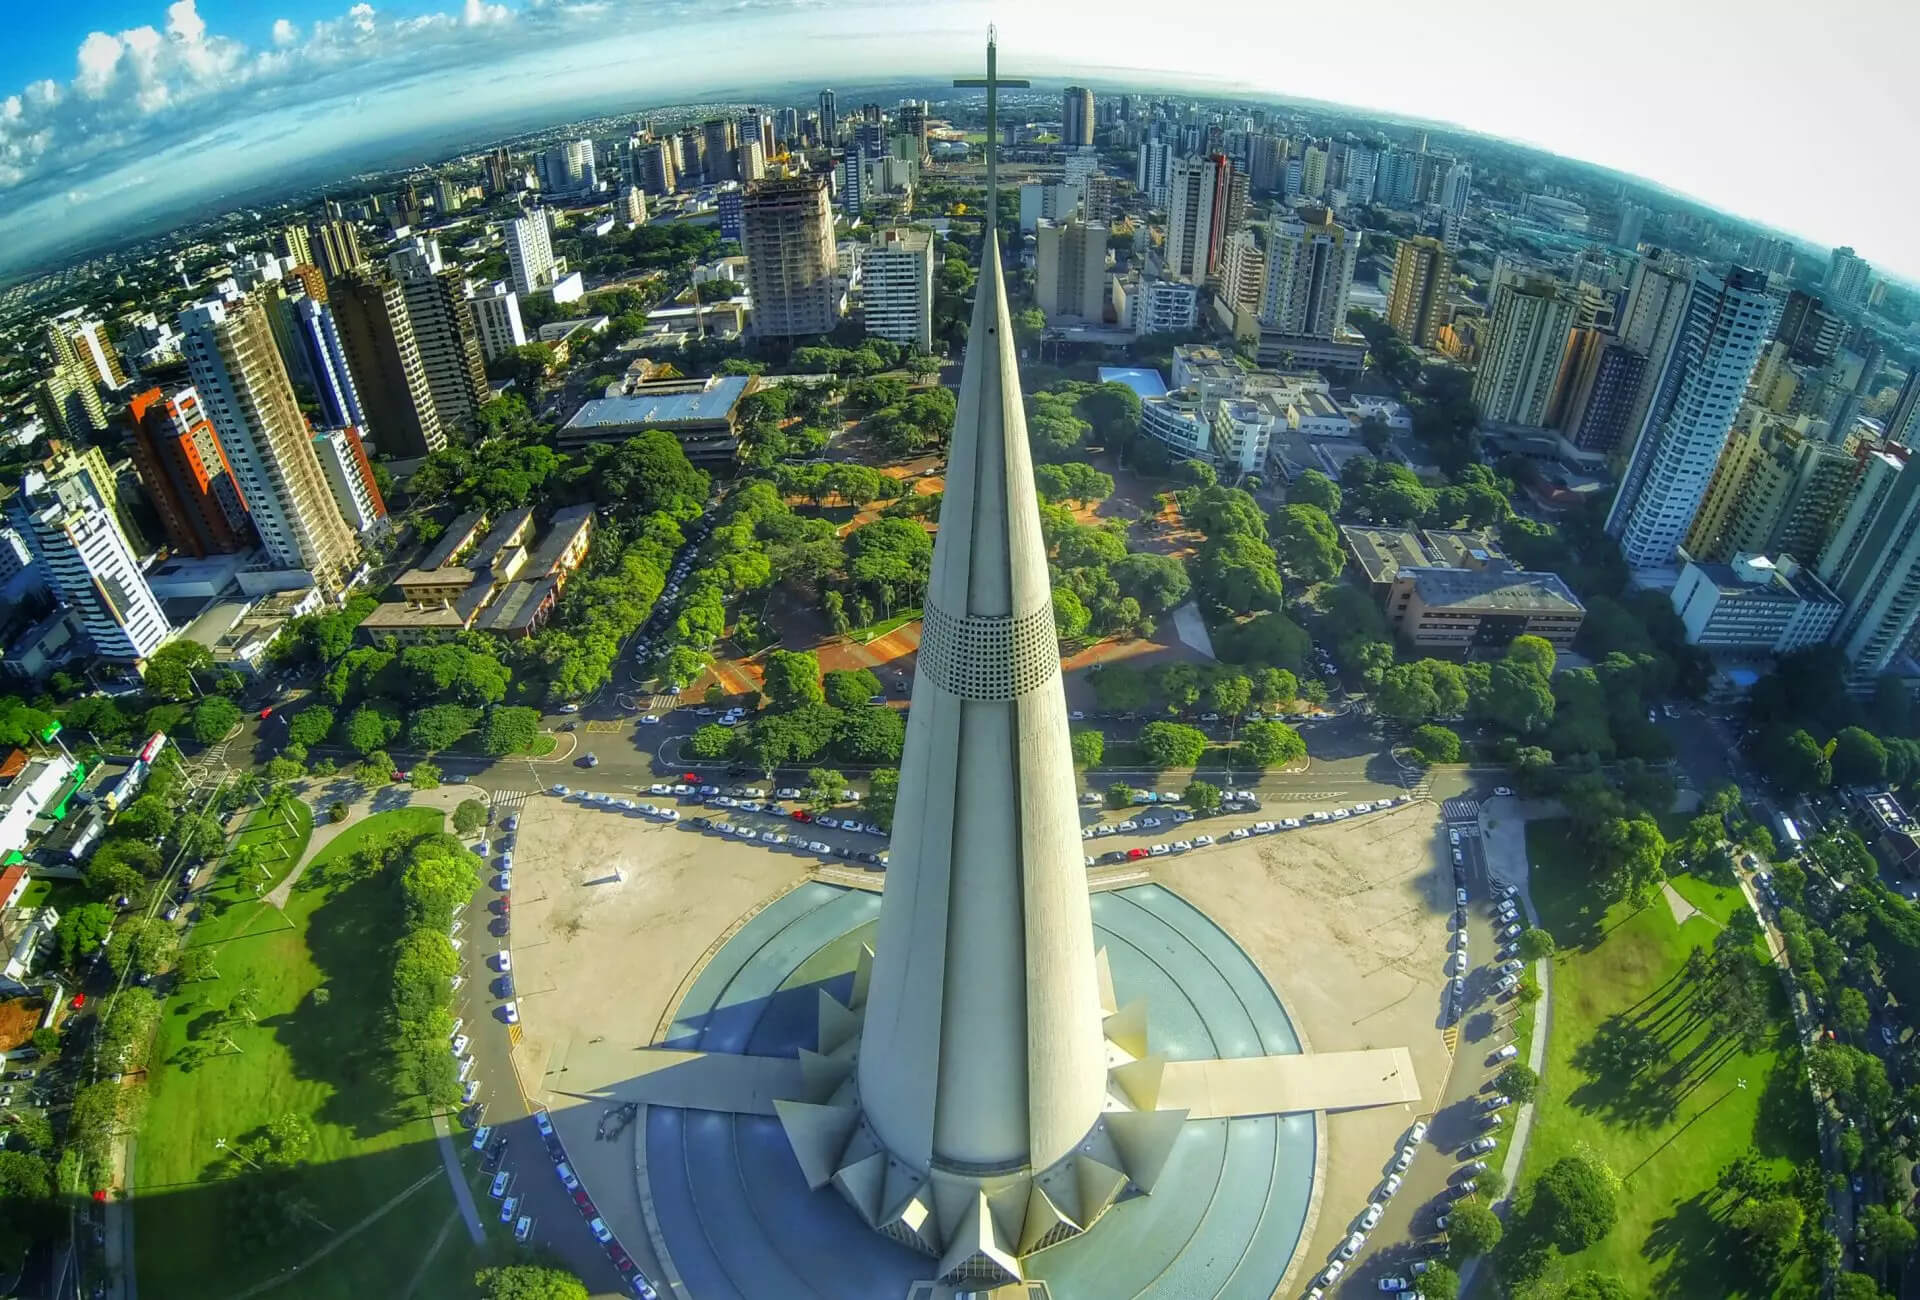 Vista aérea de Maringá, uma das melhores cidades para morar, com a Catedral e seus arredores durante o dia.